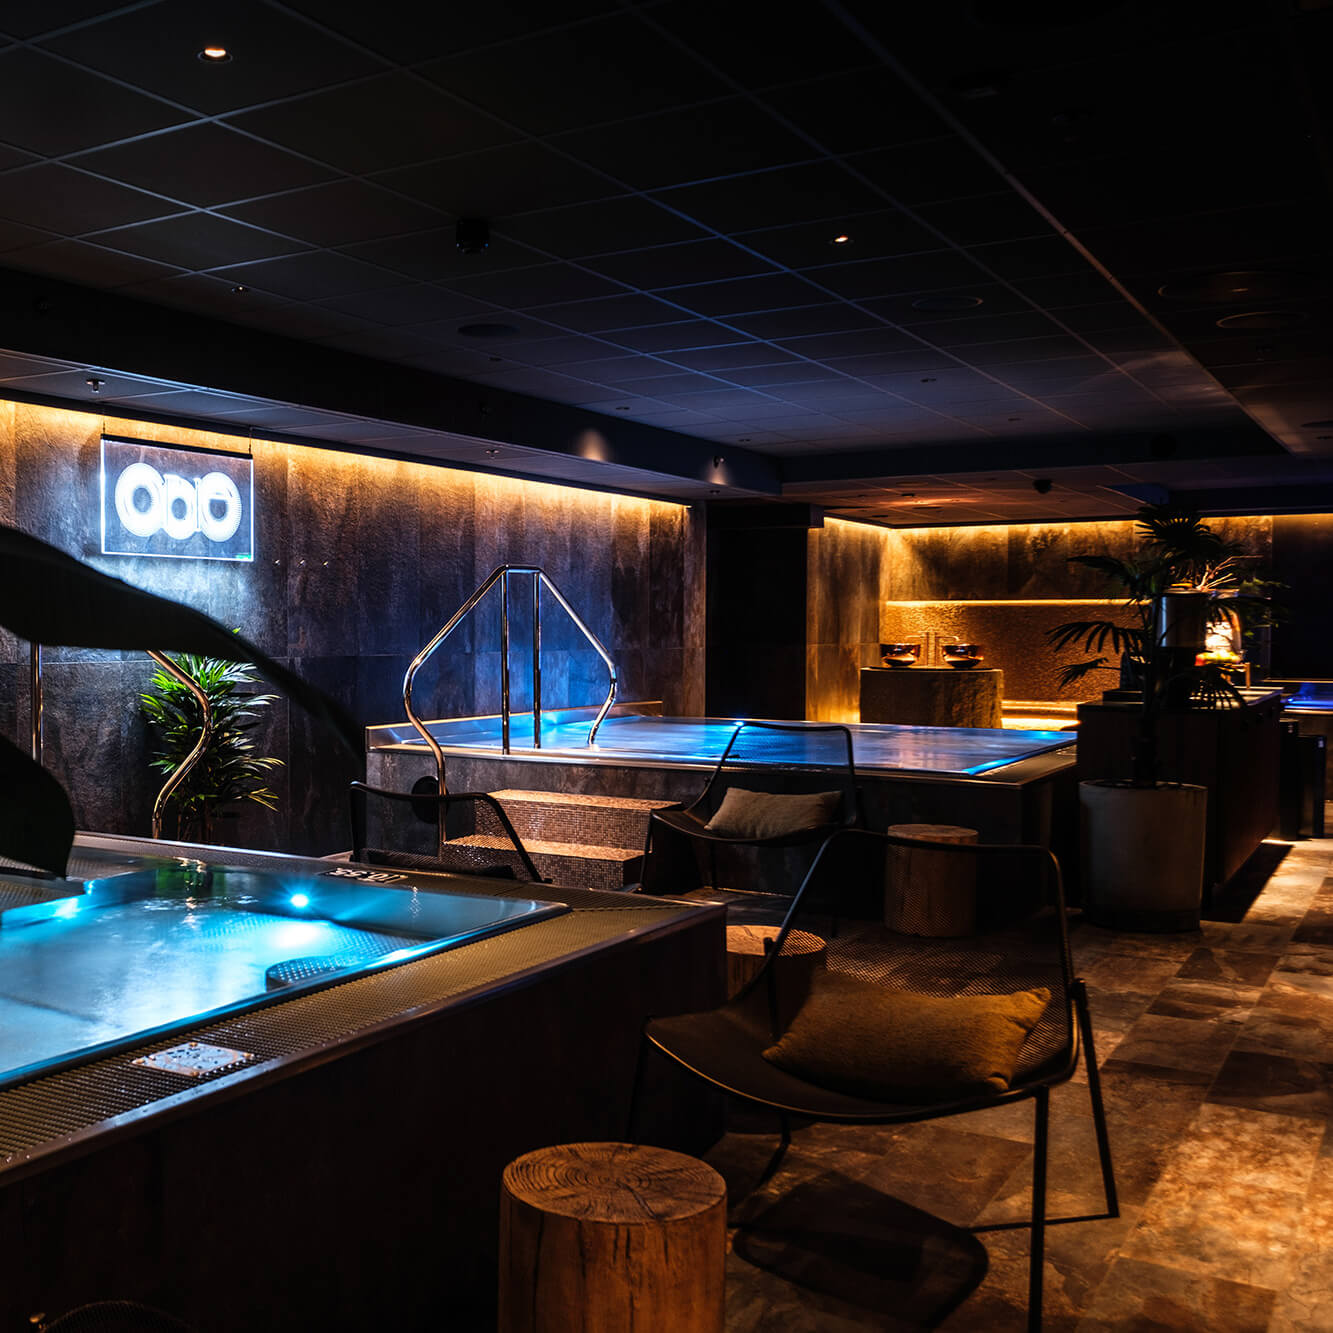 Et mørkt oplyst rum med varm bassiner i Obie Spa på Clarion Hotel Draken i Gøteborg, Sverige.